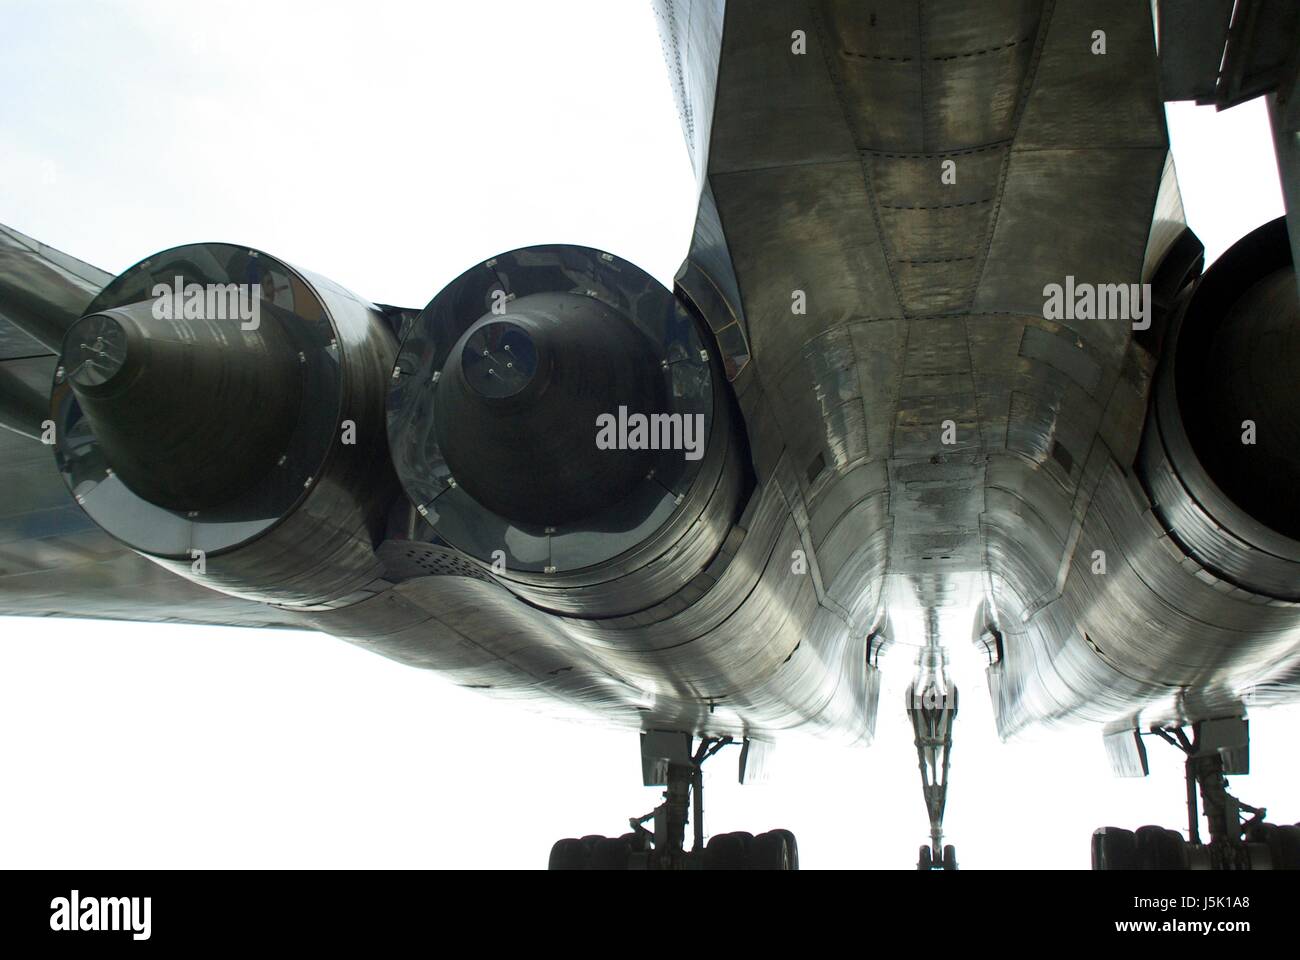 Boquilla de transporte avión supersónico avión aviones de propulsión a chorro de avión Foto de stock